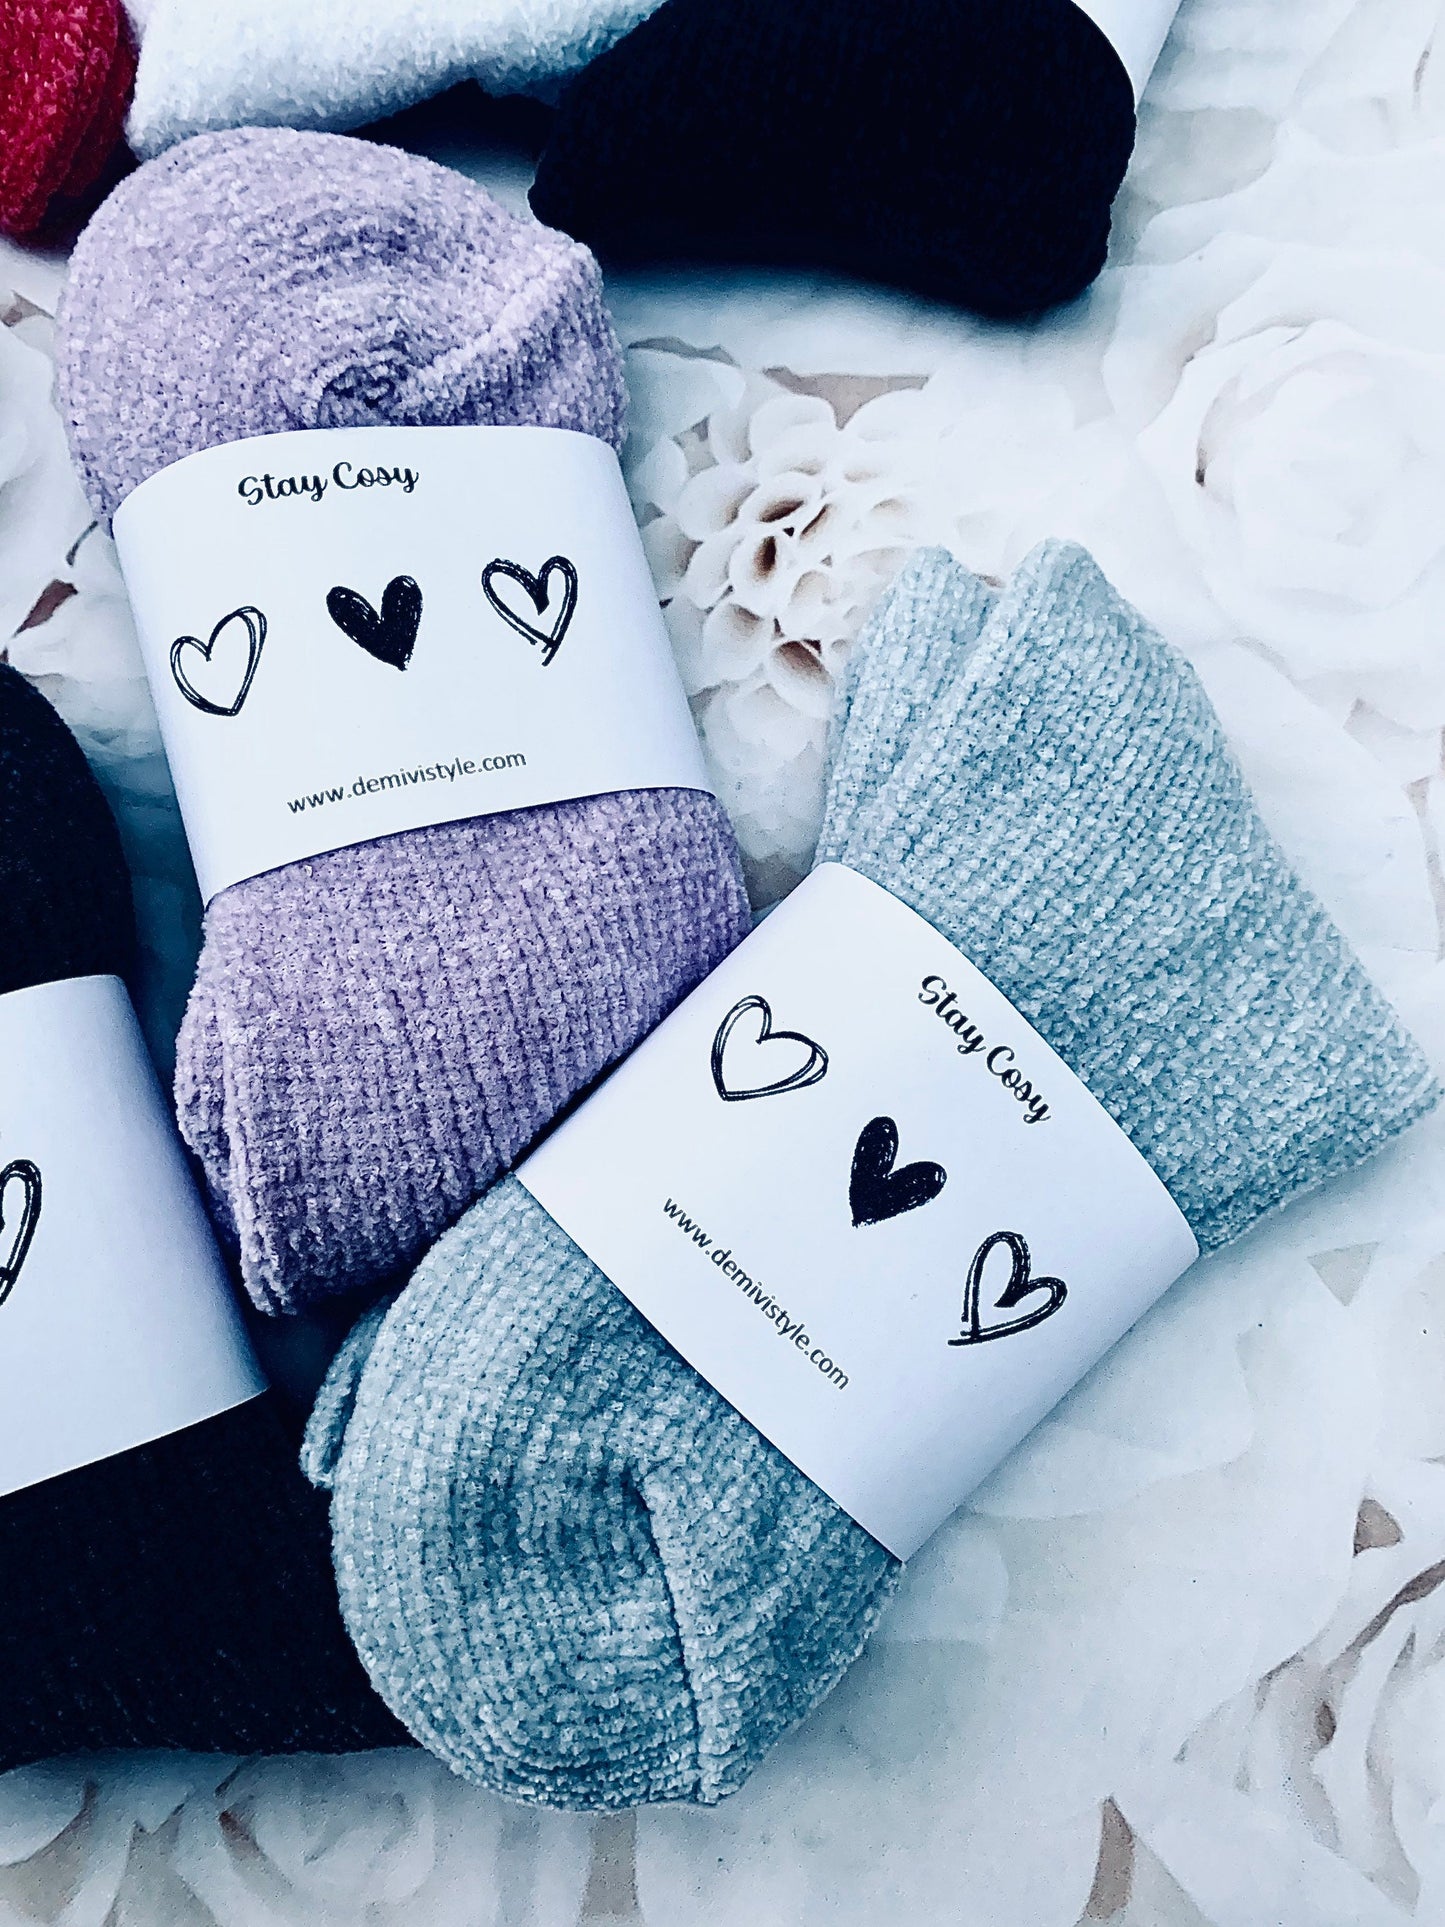 Stay cosy socks / winter socks / sleeping socks / gift for her / warm socks / gifts / christmas gift / stocking fillers / festive socks